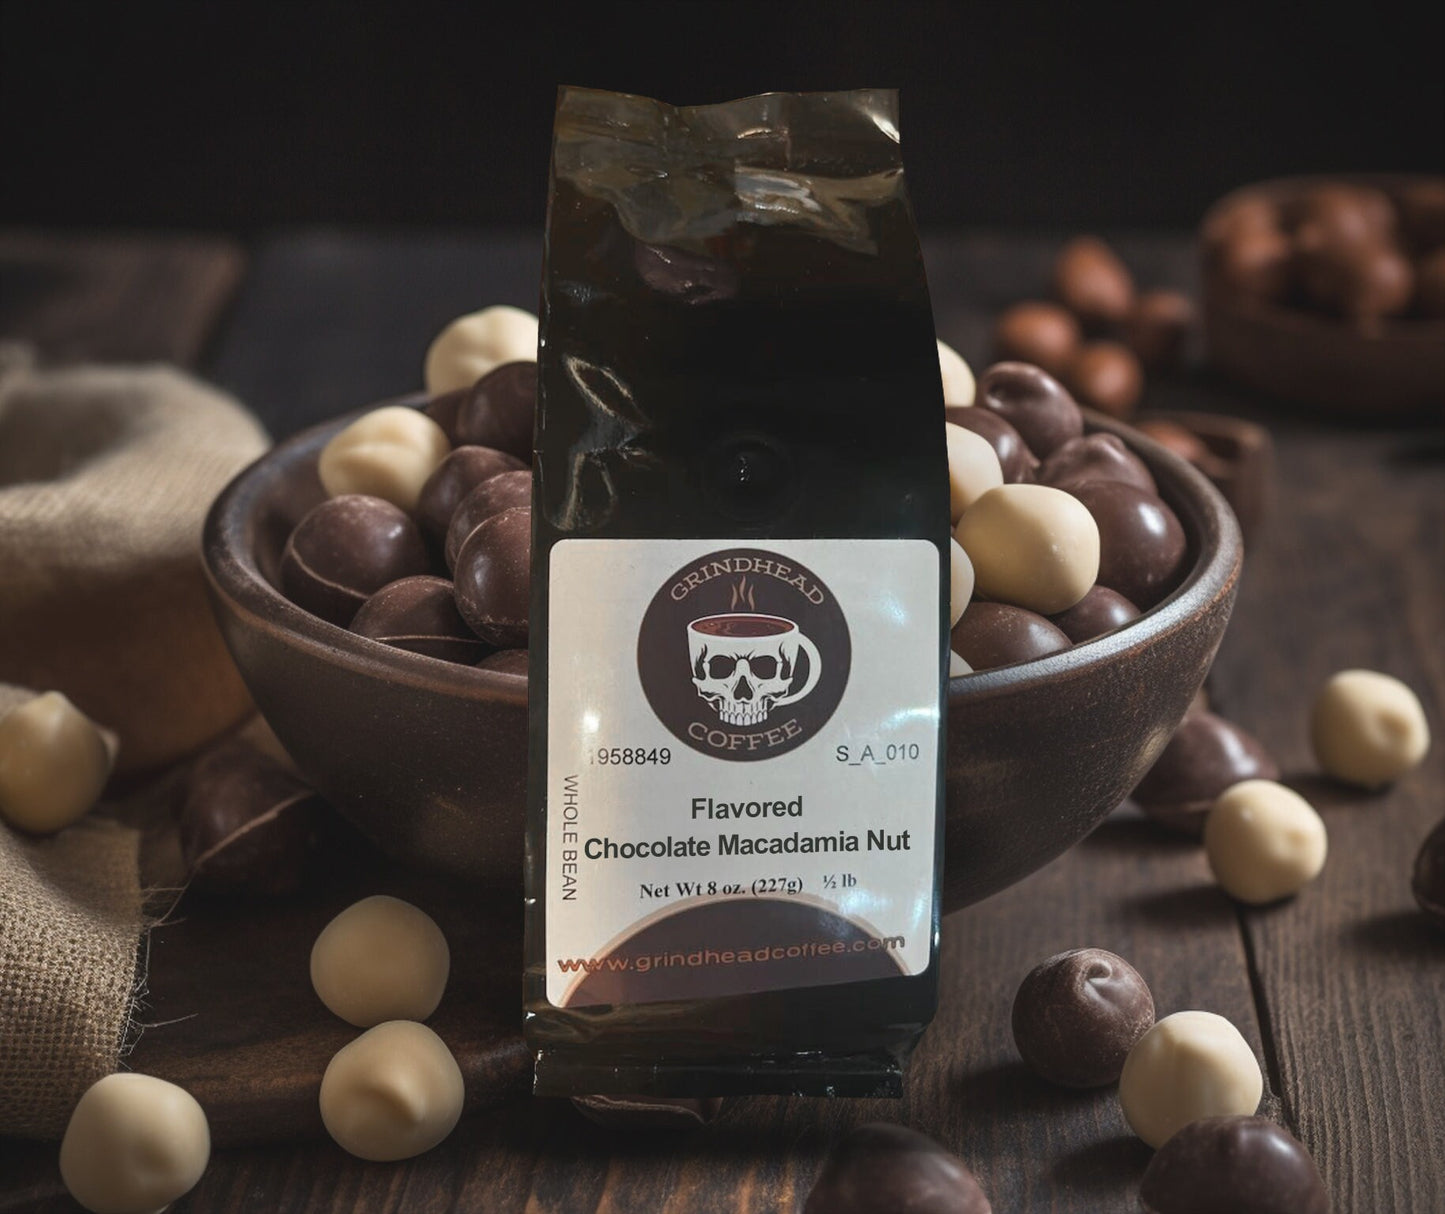 Chocolate Macadamia Nut Coffee - Dessert Coffee Lover Gift - Sweet Coffee